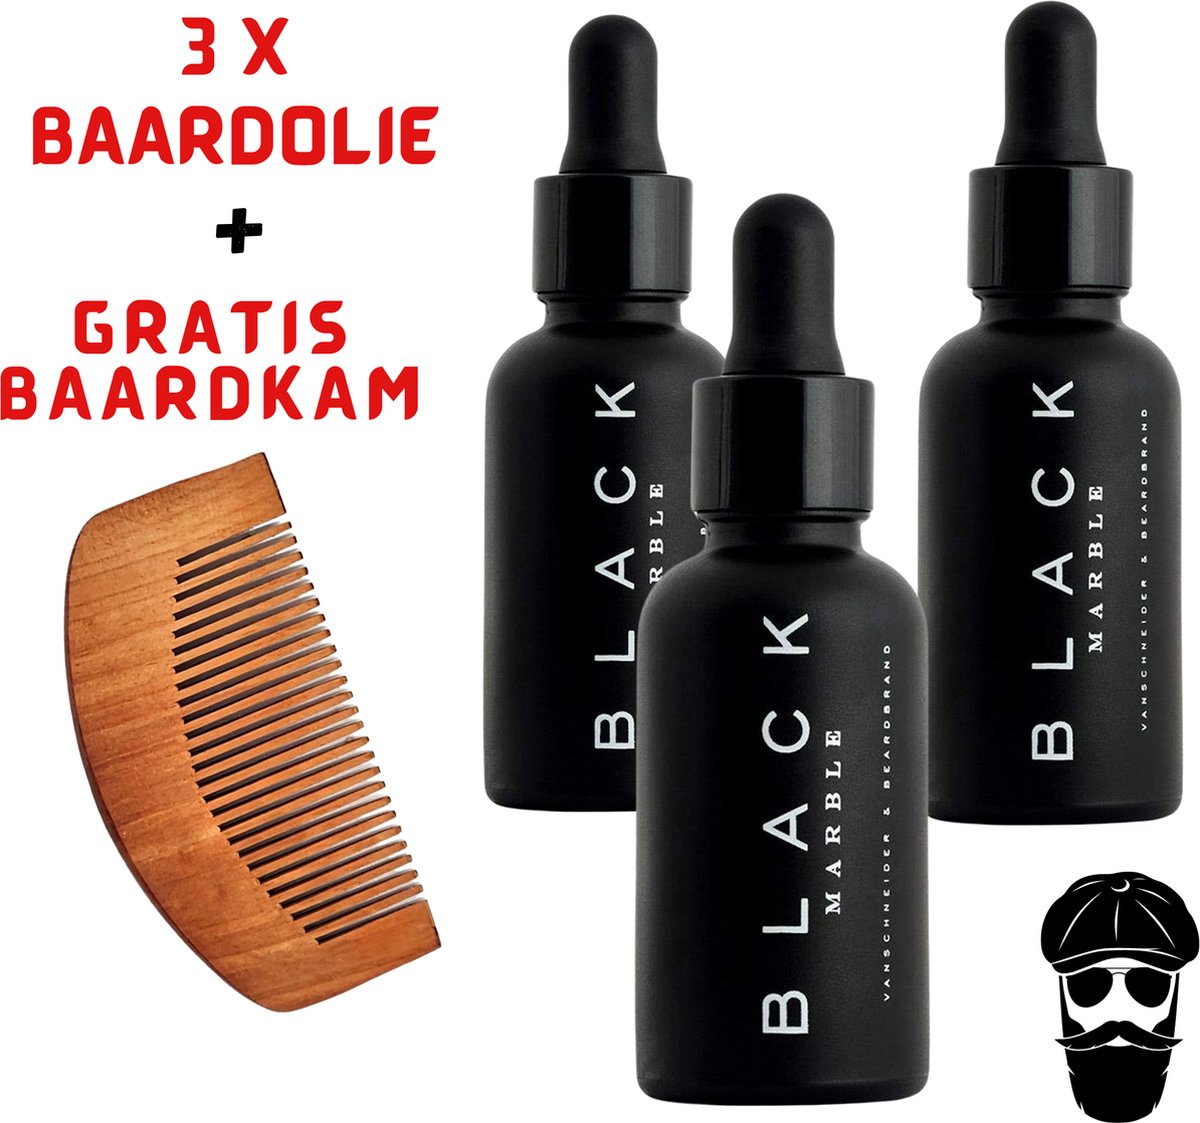 Black Marble Baardolie 3x30ml + Gratis Baardkam - Baard olie - Baardverzorging - Beard oil - Baardgroei